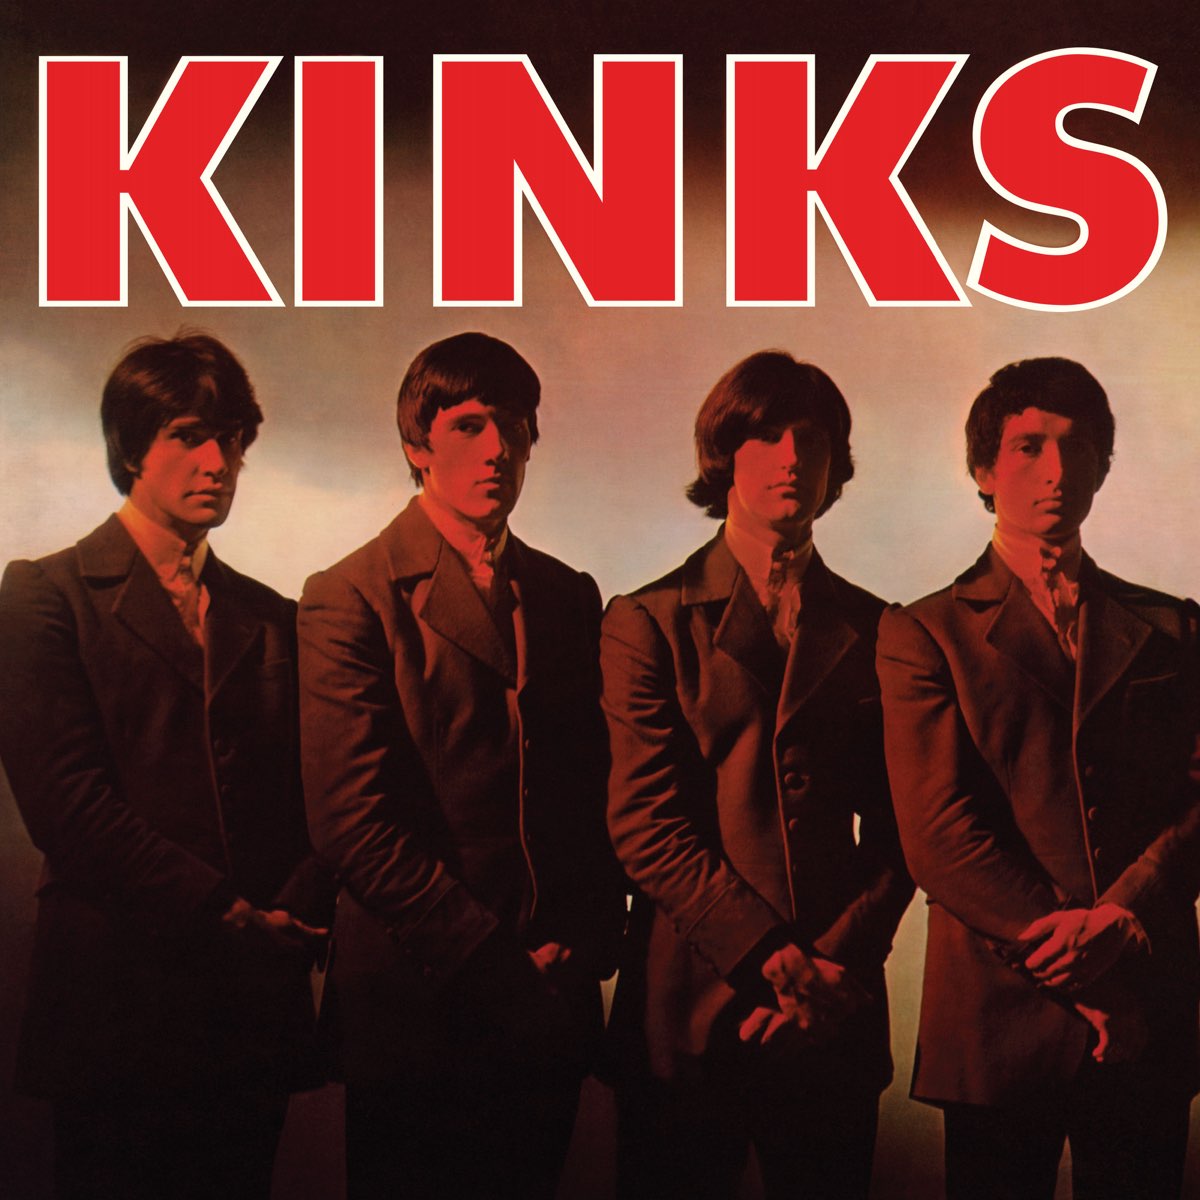 Kinks, The: Kinks (Vinyl LP)